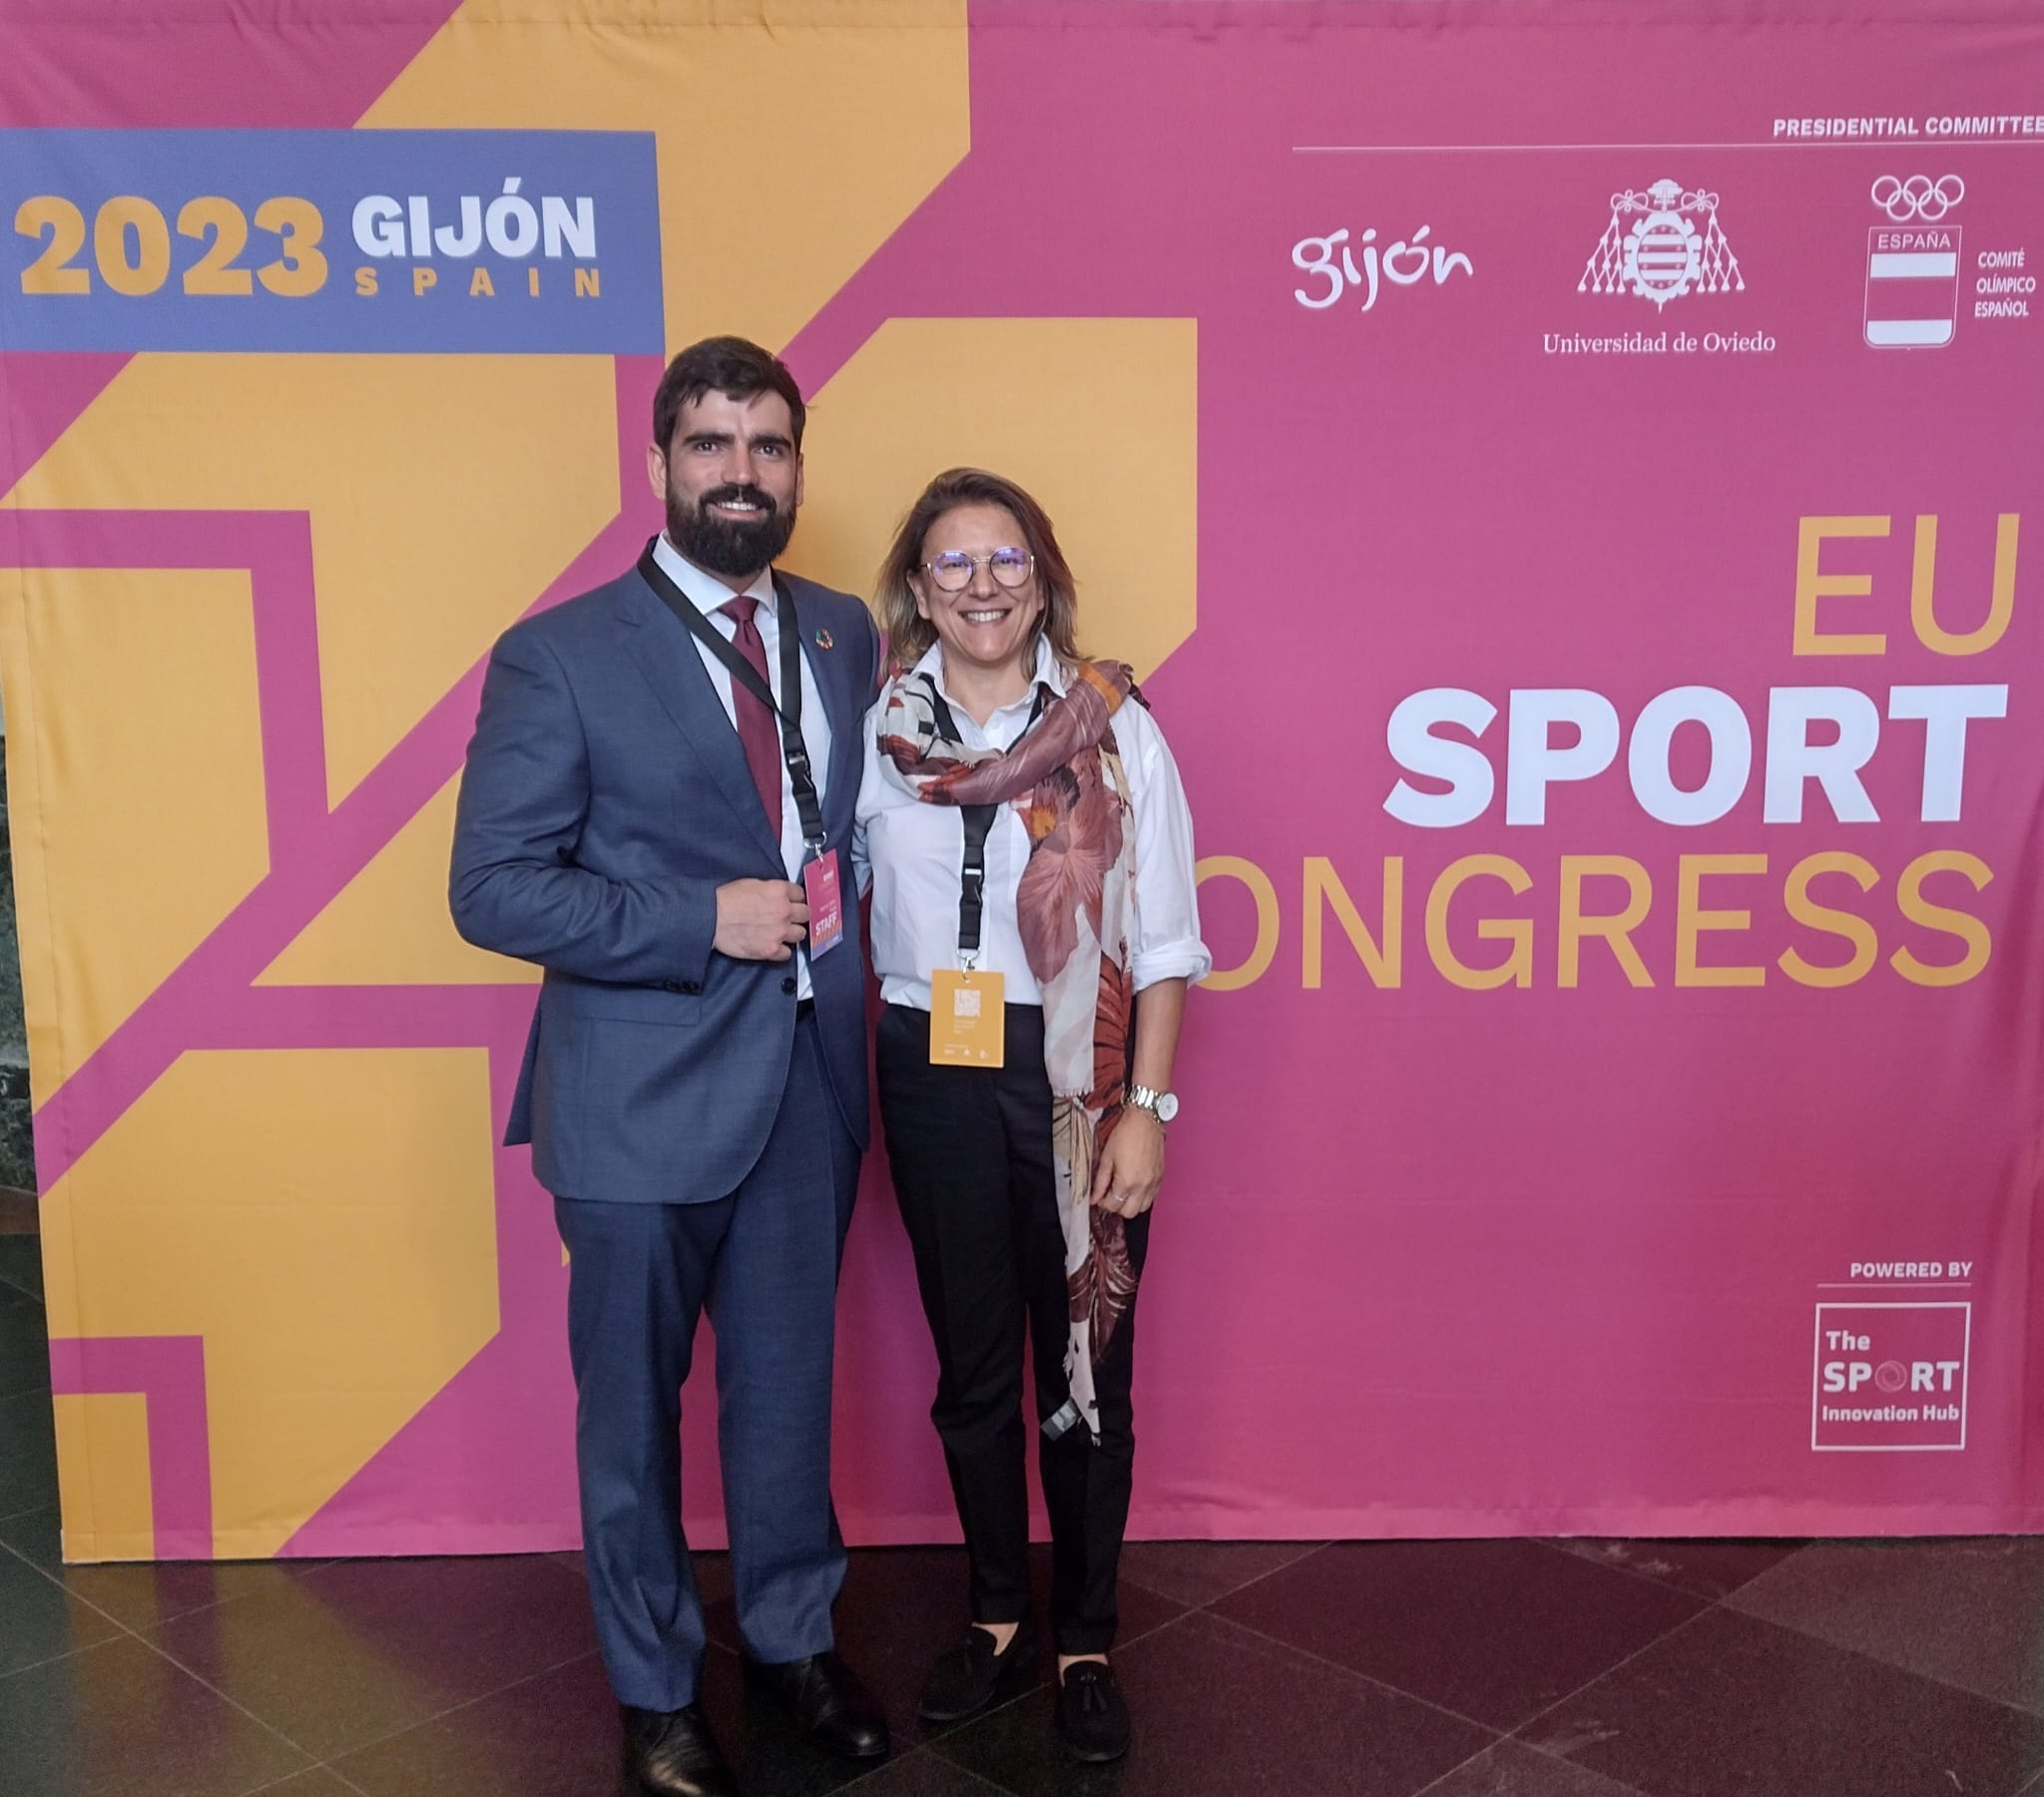 Congresso Europeu de Desporto até sexta-feira em Gijón